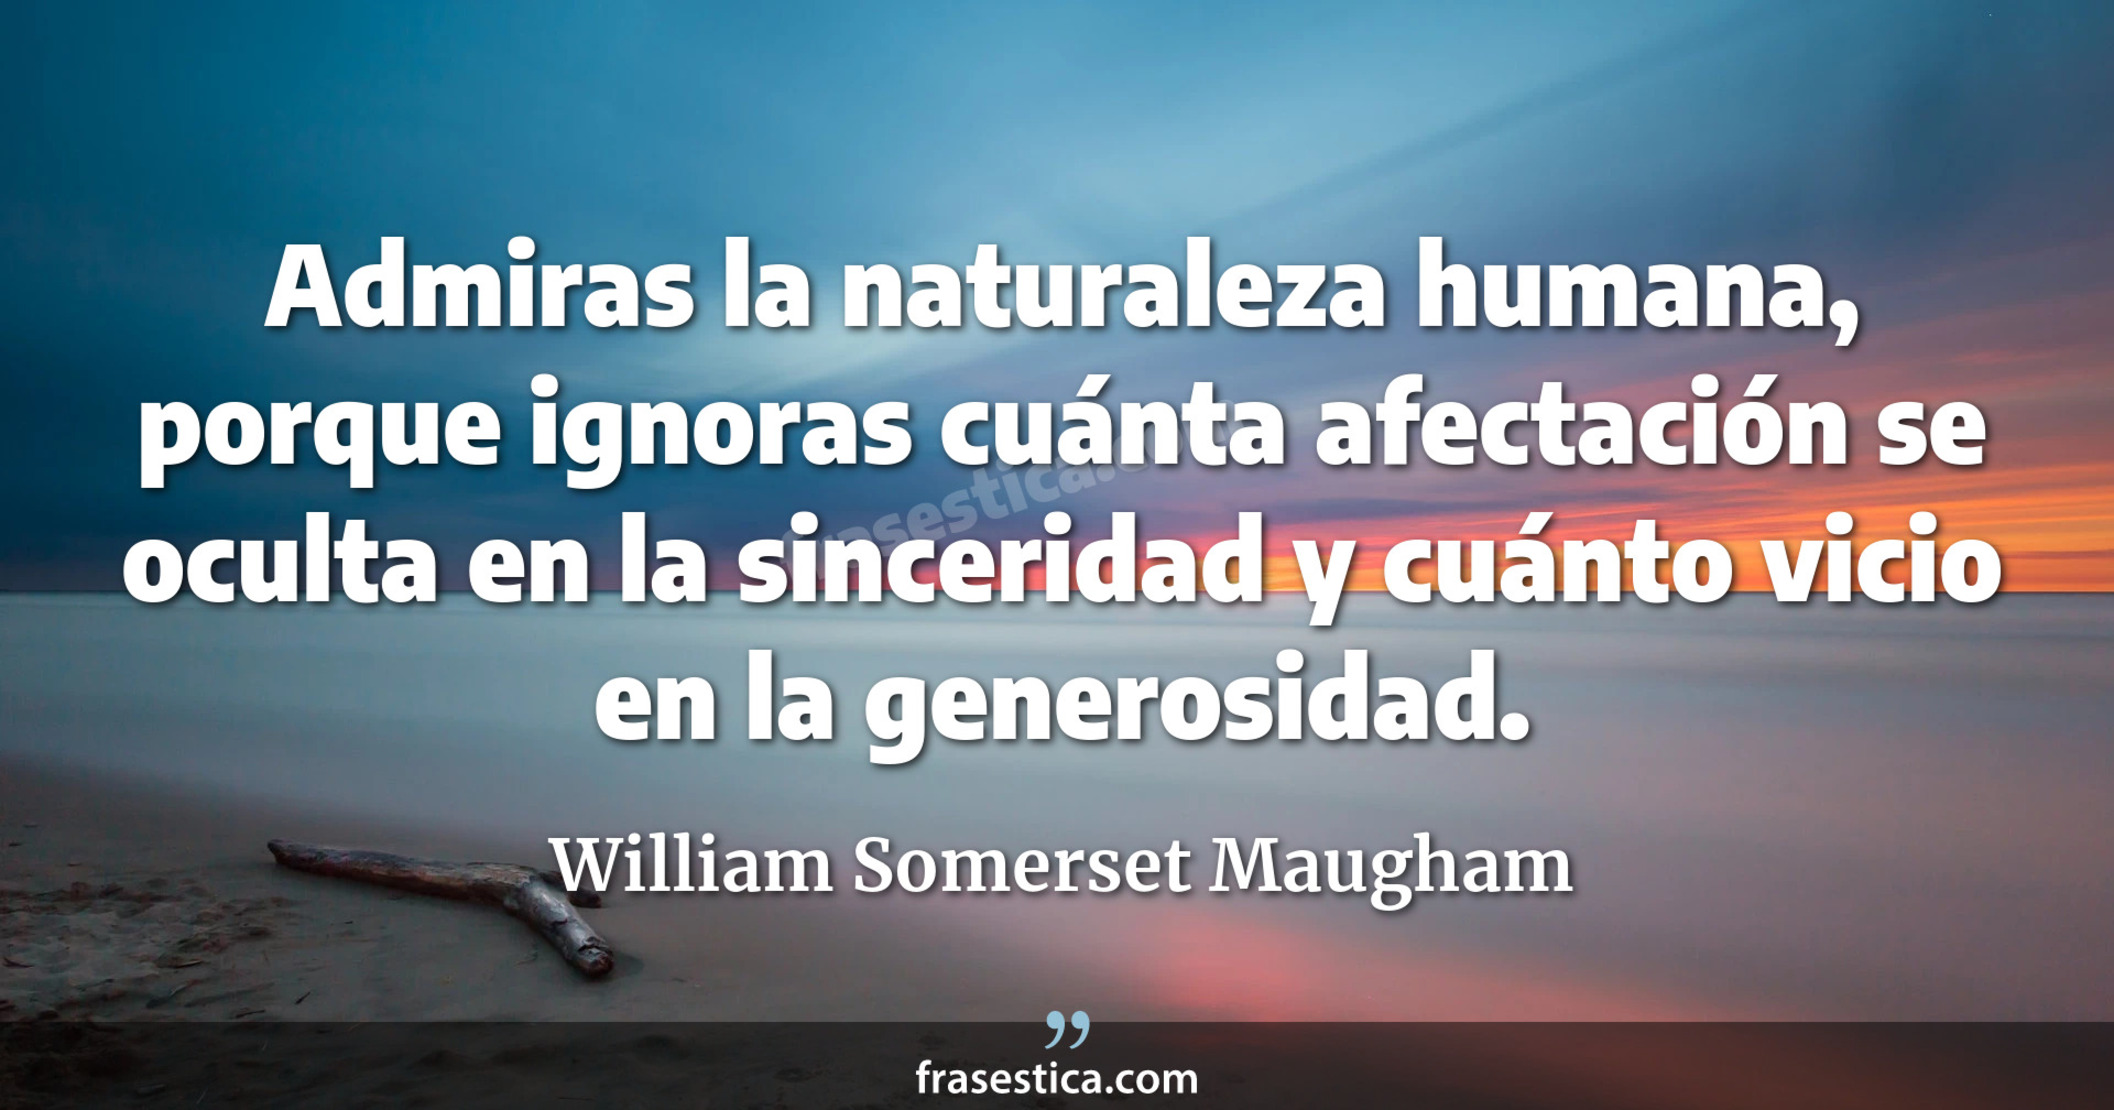 Admiras la naturaleza humana, porque ignoras cuánta afectación se oculta en la sinceridad y cuánto vicio en la generosidad. - William Somerset Maugham